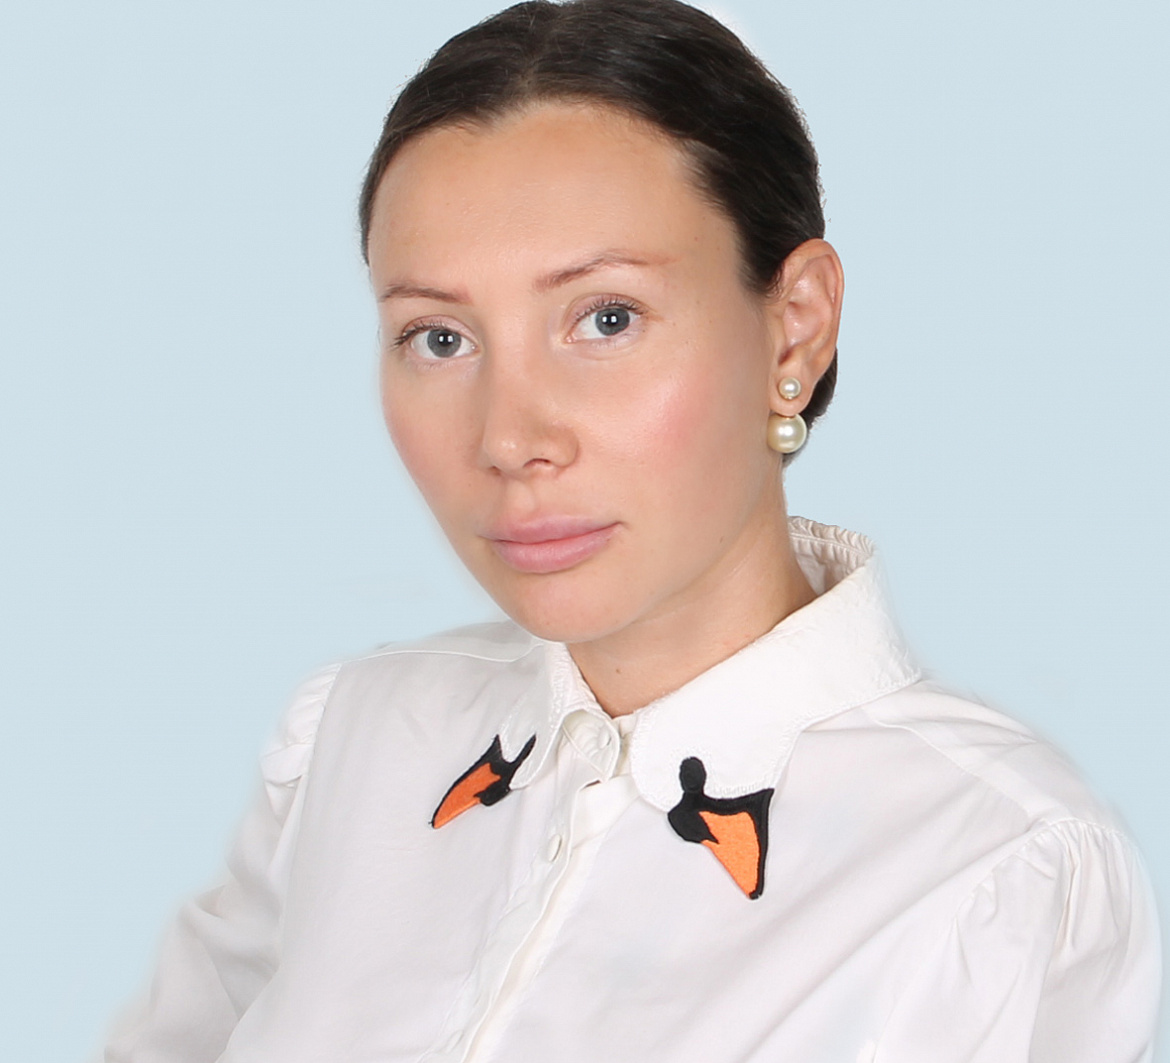 Разумовская Дарья Владимировна